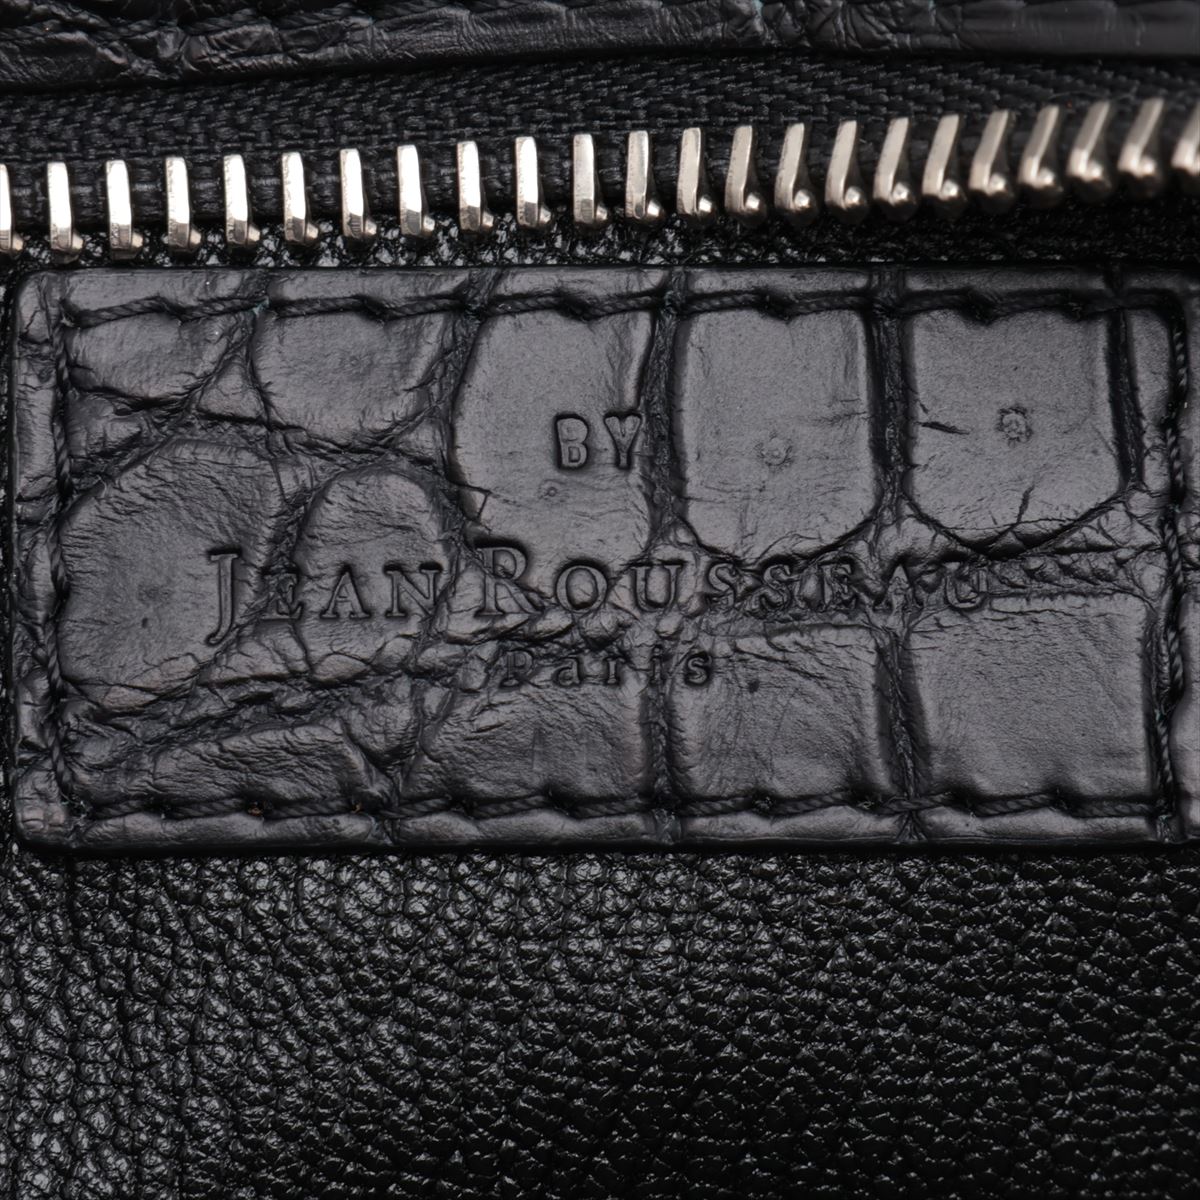 Jean Rousseau Crocodile Shoulder Bag Black